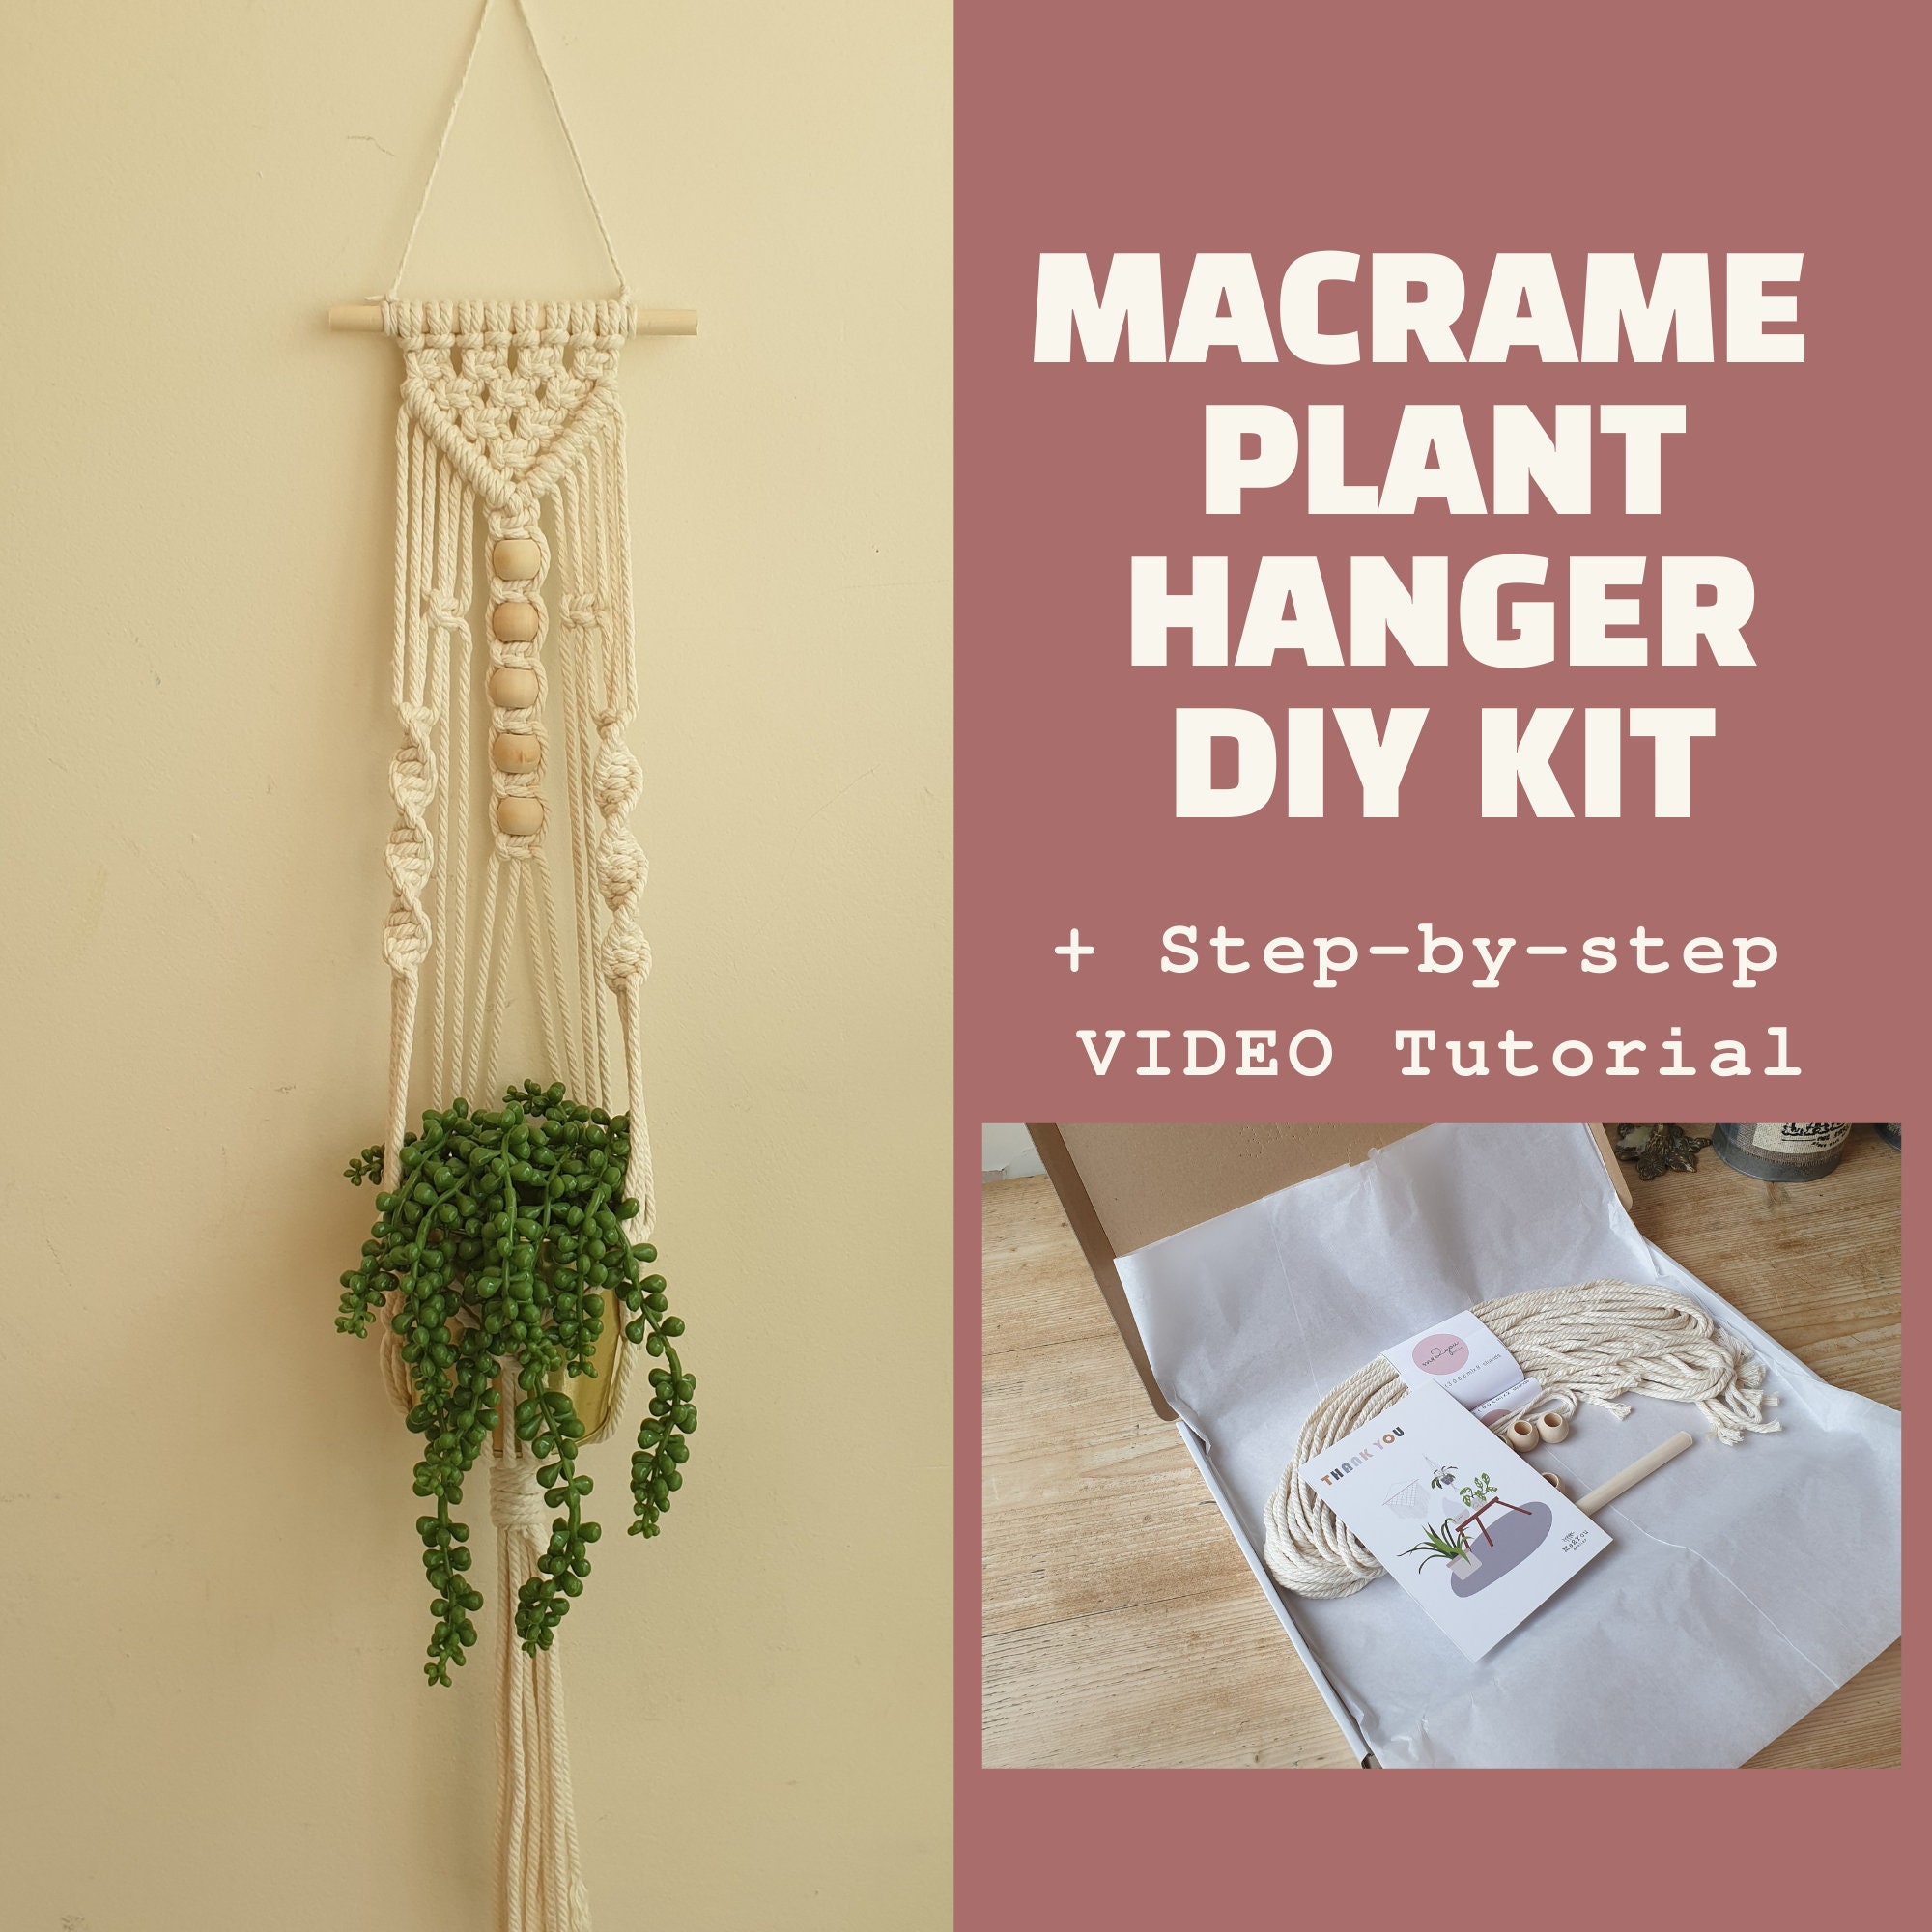 DIY Macrame Kit for Adults Beginners, 4 Macrame Plant Hanger Kit